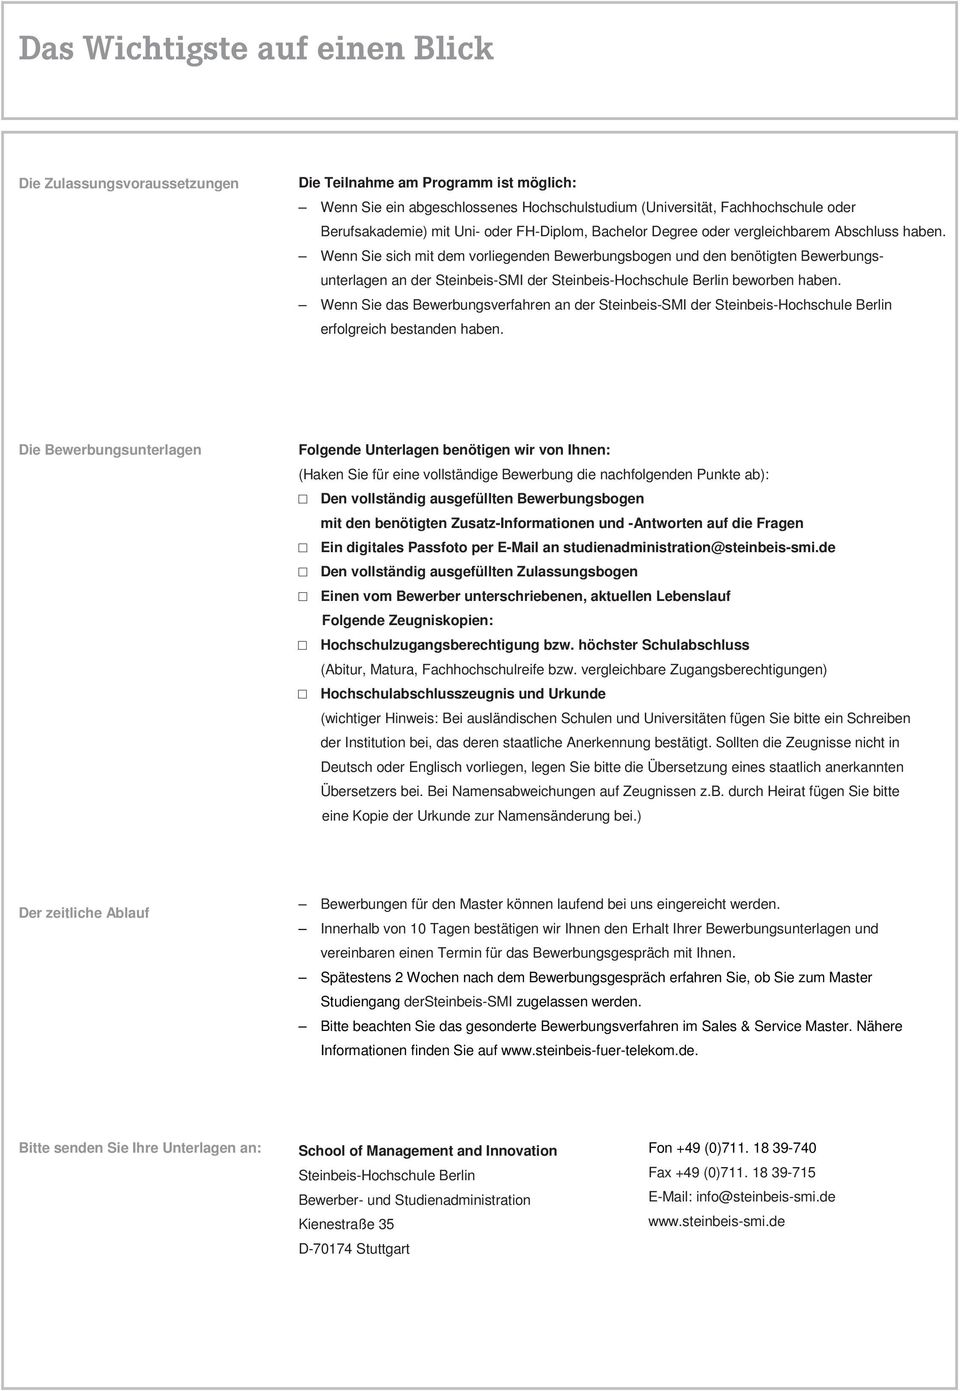 Wenn Sie sich mit dem vorliegenden Bewerbungsbogen und den benötigten Bewerbungsunterlagen an der Steinbeis-SMI der Steinbeis-Hochschule Berlin beworben haben.